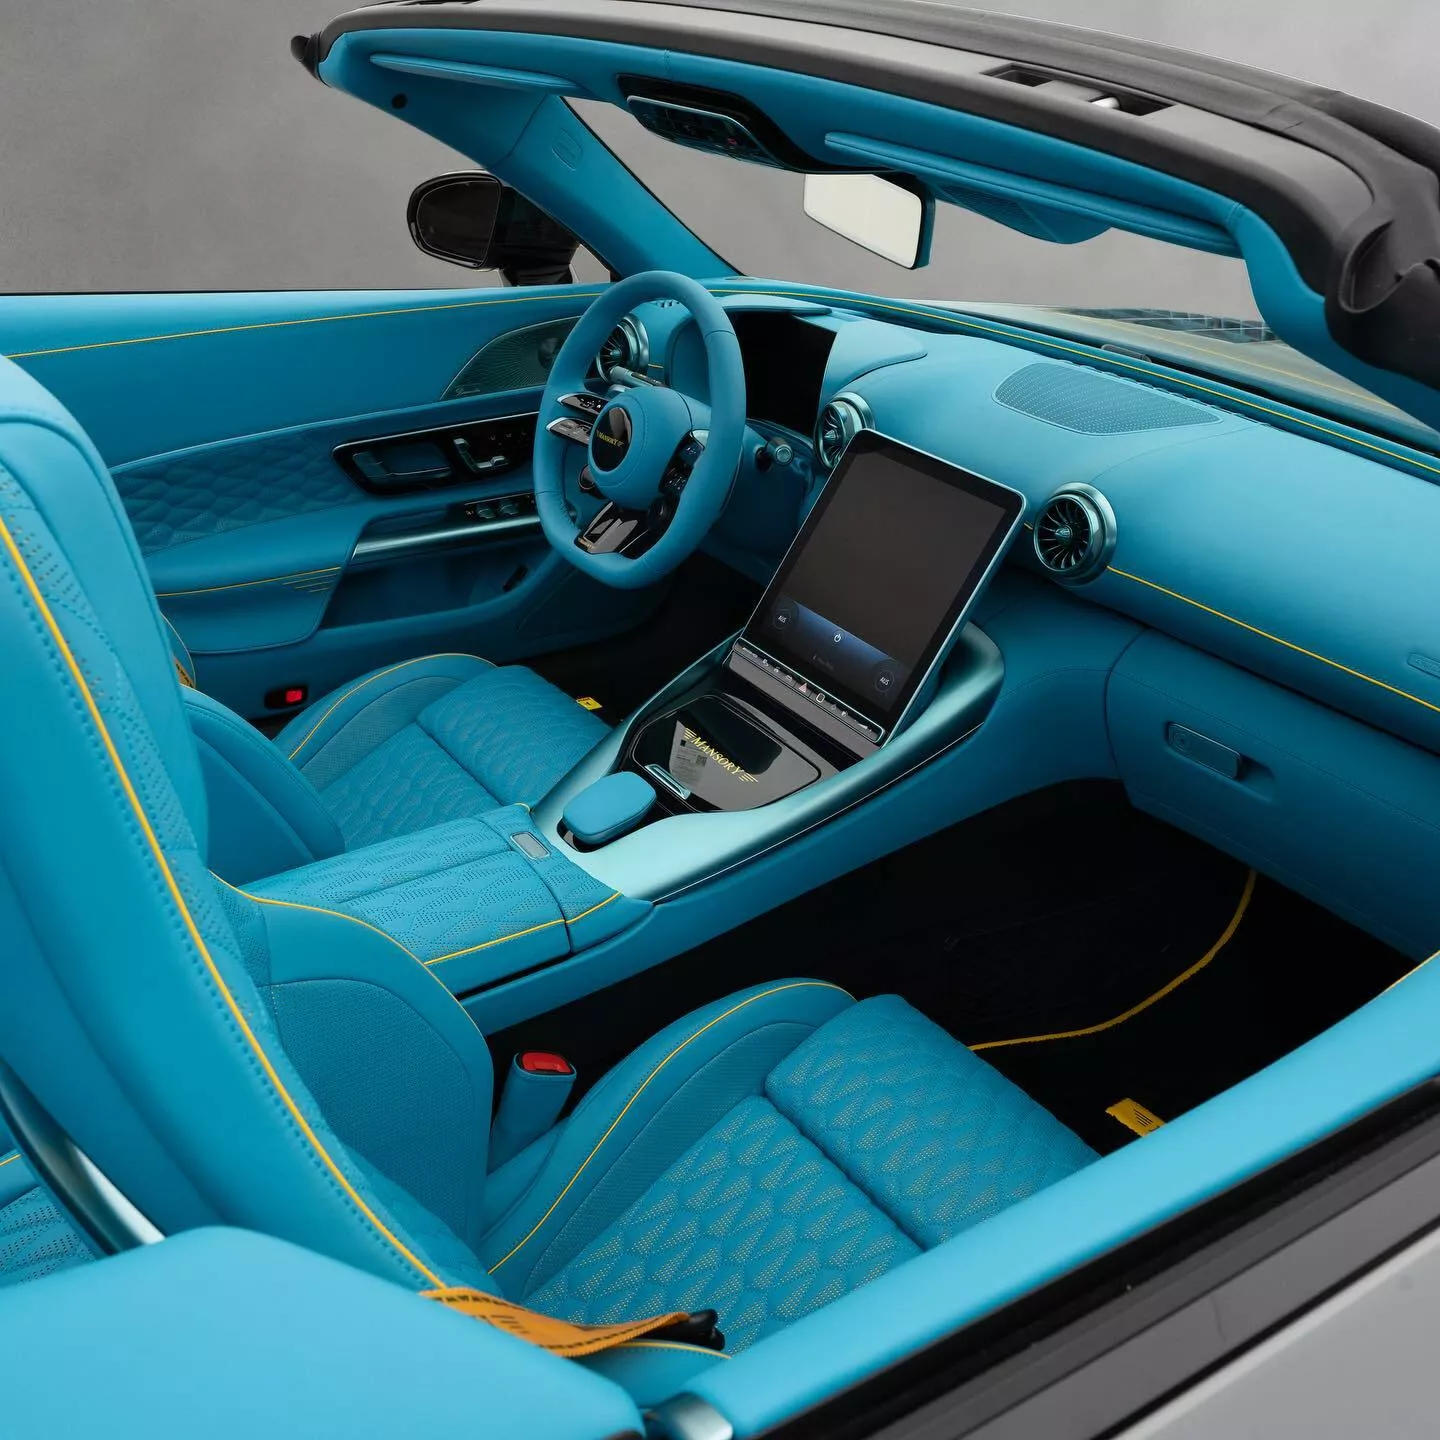 Mercedes-AMG SL 63 nổi bật với gói độ Mansory, nước sơn quyến rũ và sức mạnh 850 mã lực